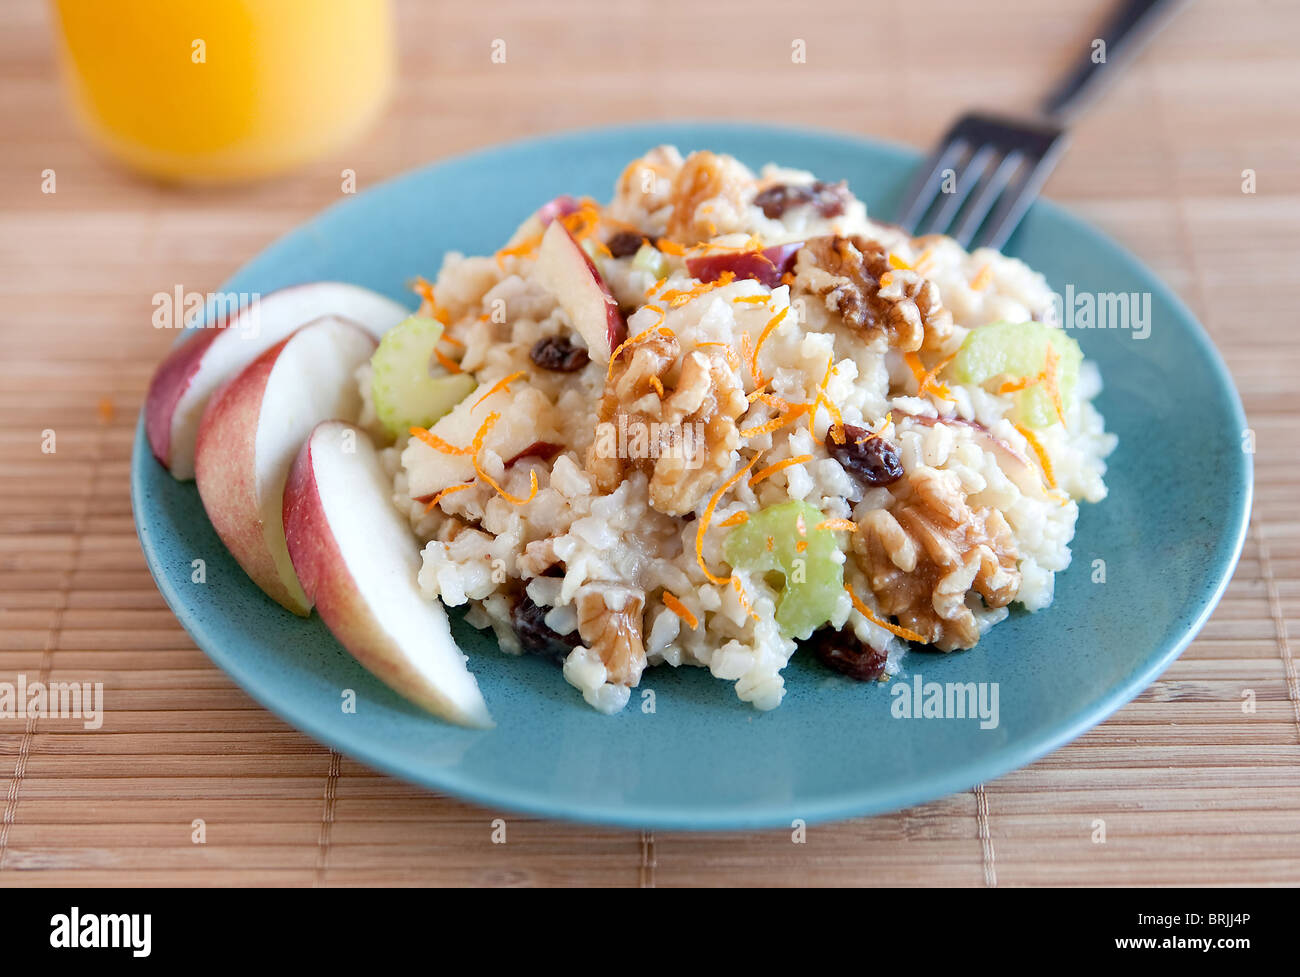 ein Teller mit Apfel Walnuss Salat ähnlich Waldorf-Salat auf einem blauen Teller mit Glas Orangensaft Stockfoto